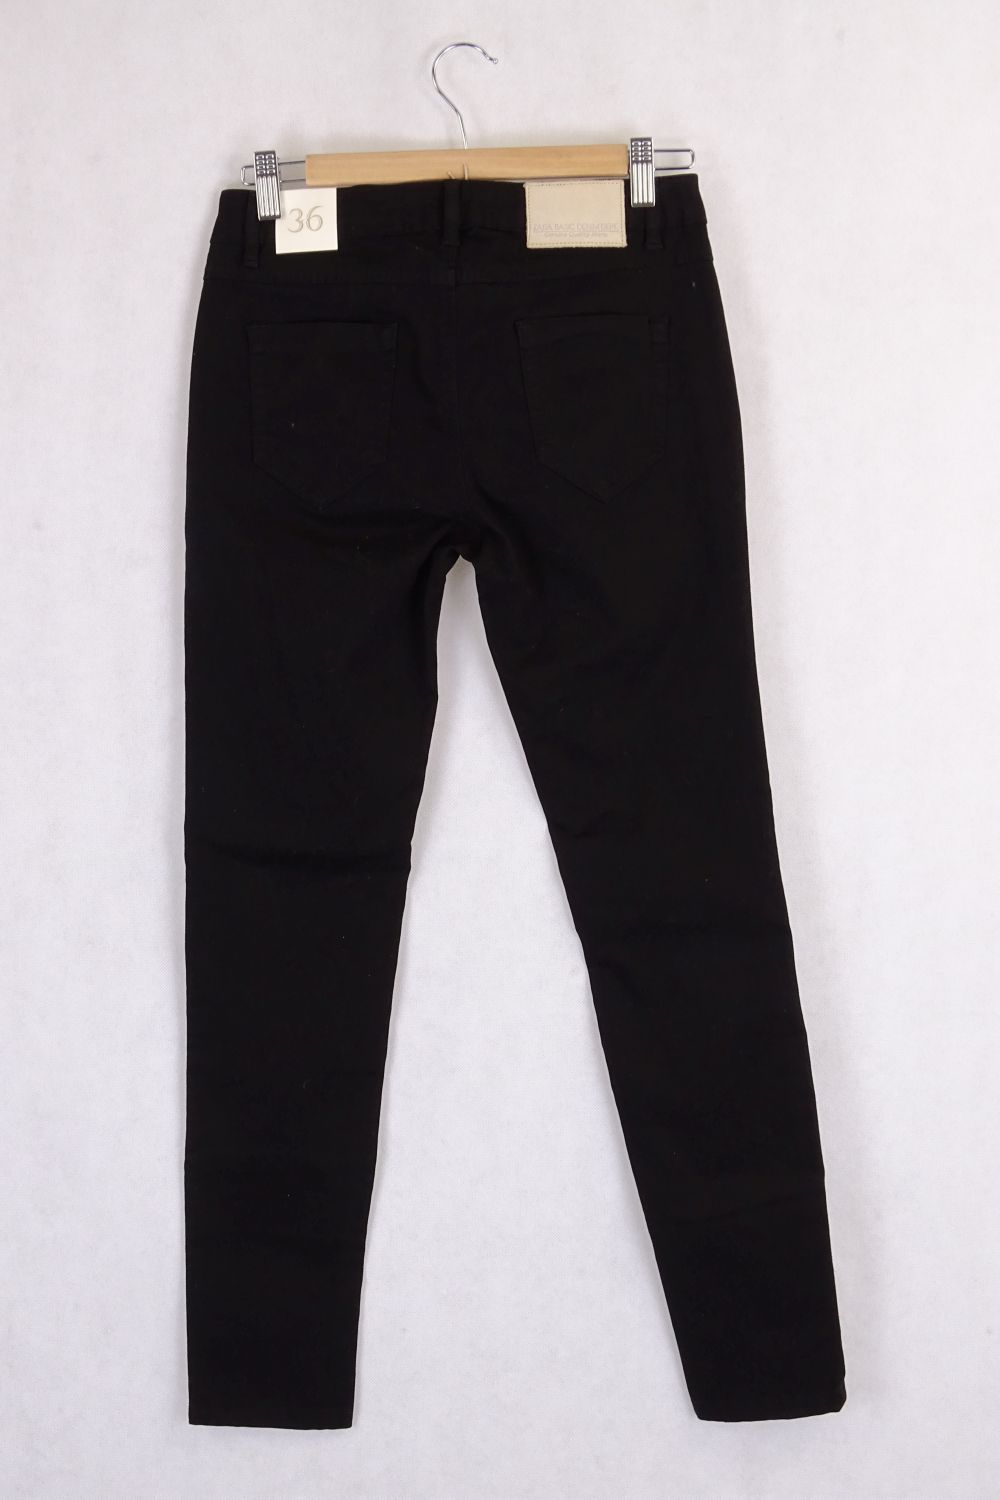 Black Zara Very Skinny Jeans 9 (Eur 35, USA 4)